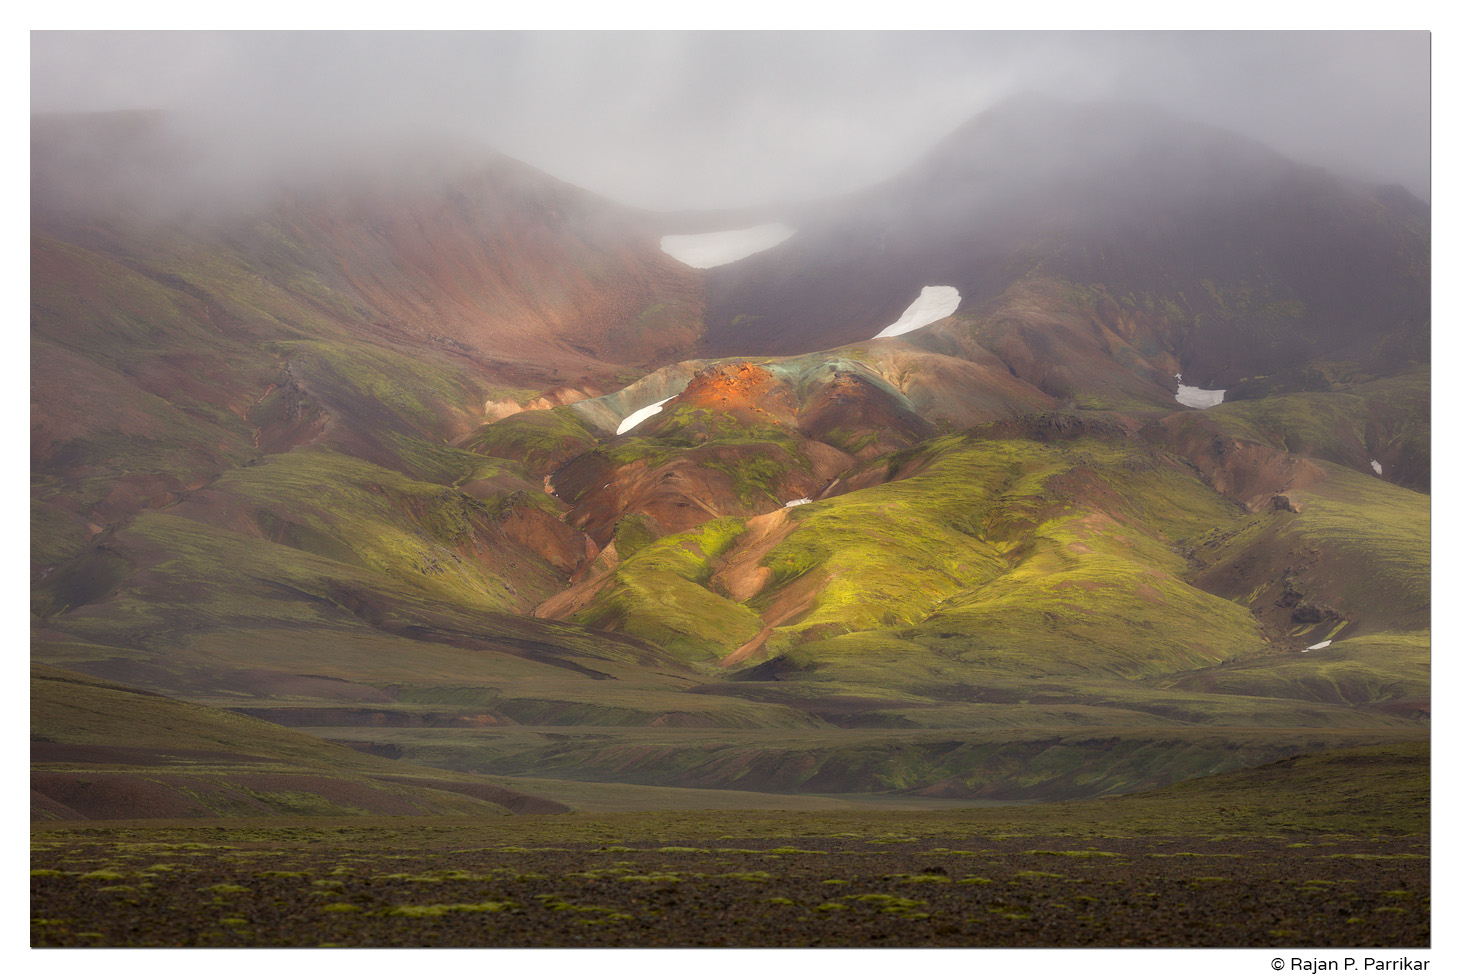 Ljósártungur, Syðra Fjallabak, Highlands, Iceland